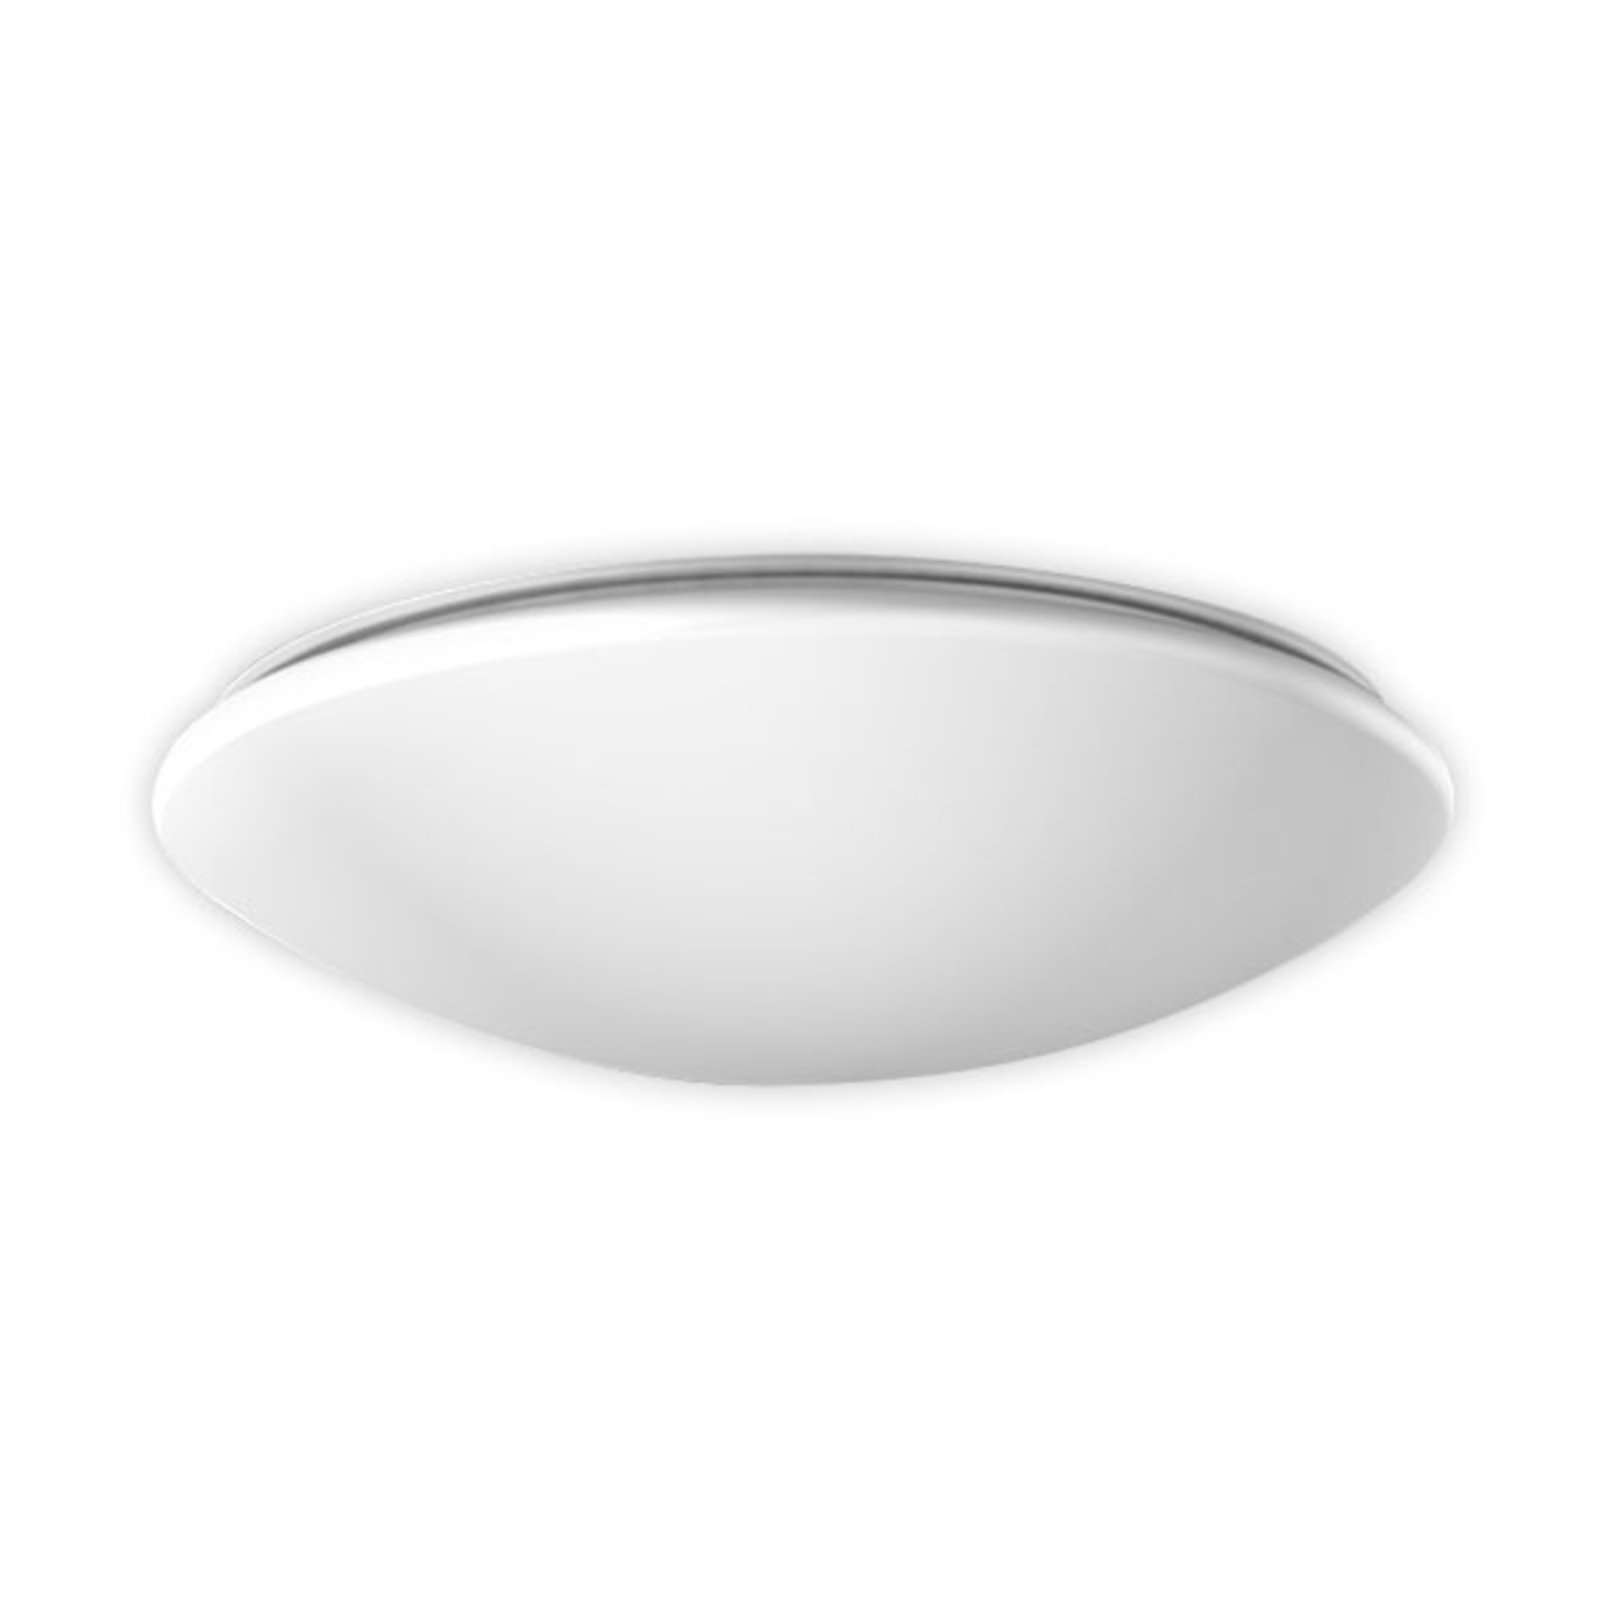 RZB Flat Polymero ceiling light DALI 32W 46cm 830